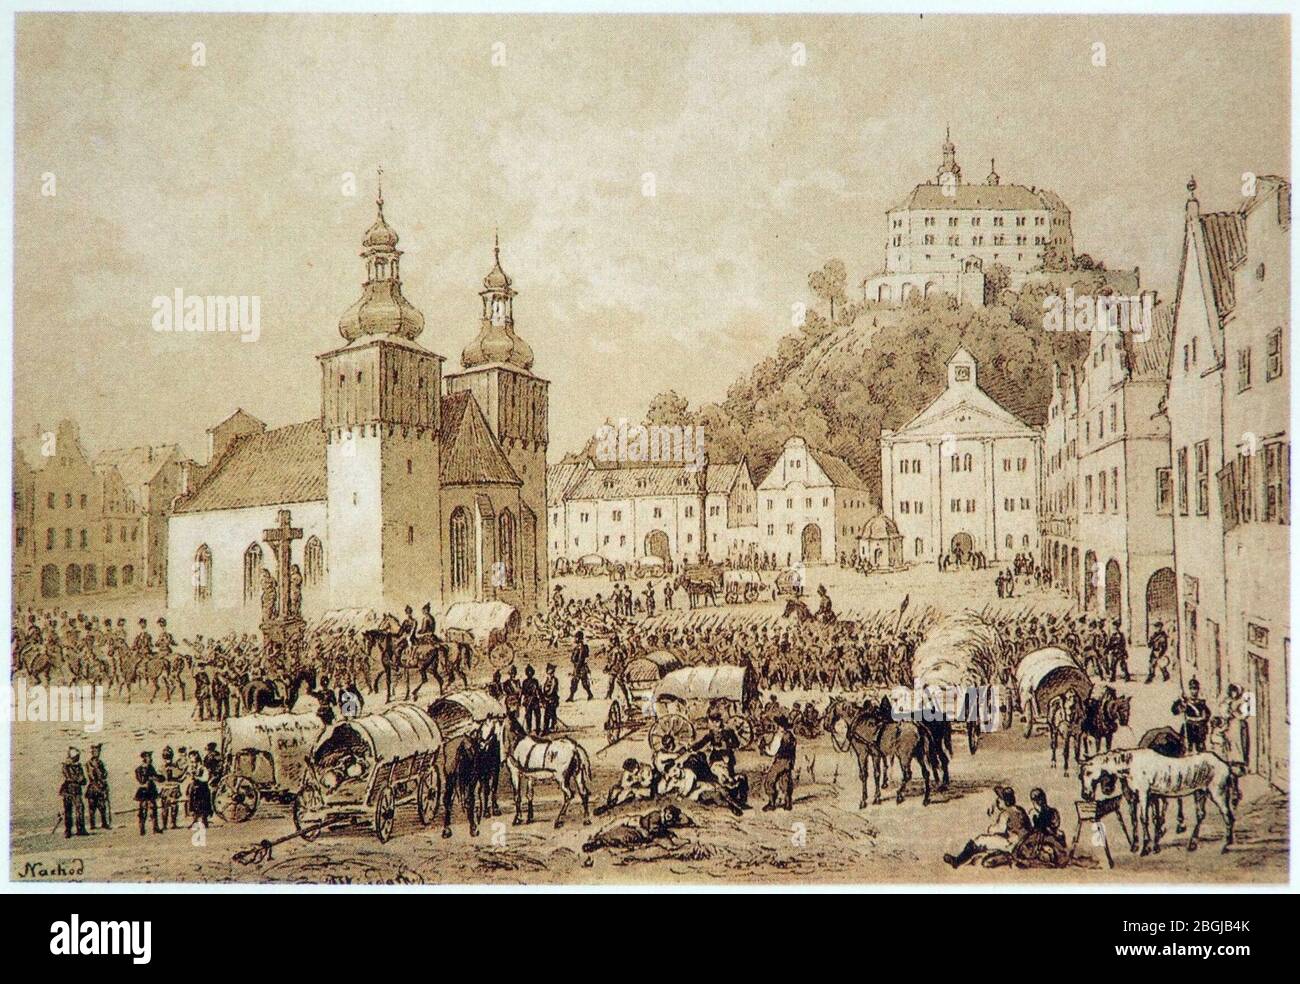 History of Náchod 13 - Náchod marketplace on 28th June 1866. Stock Photo